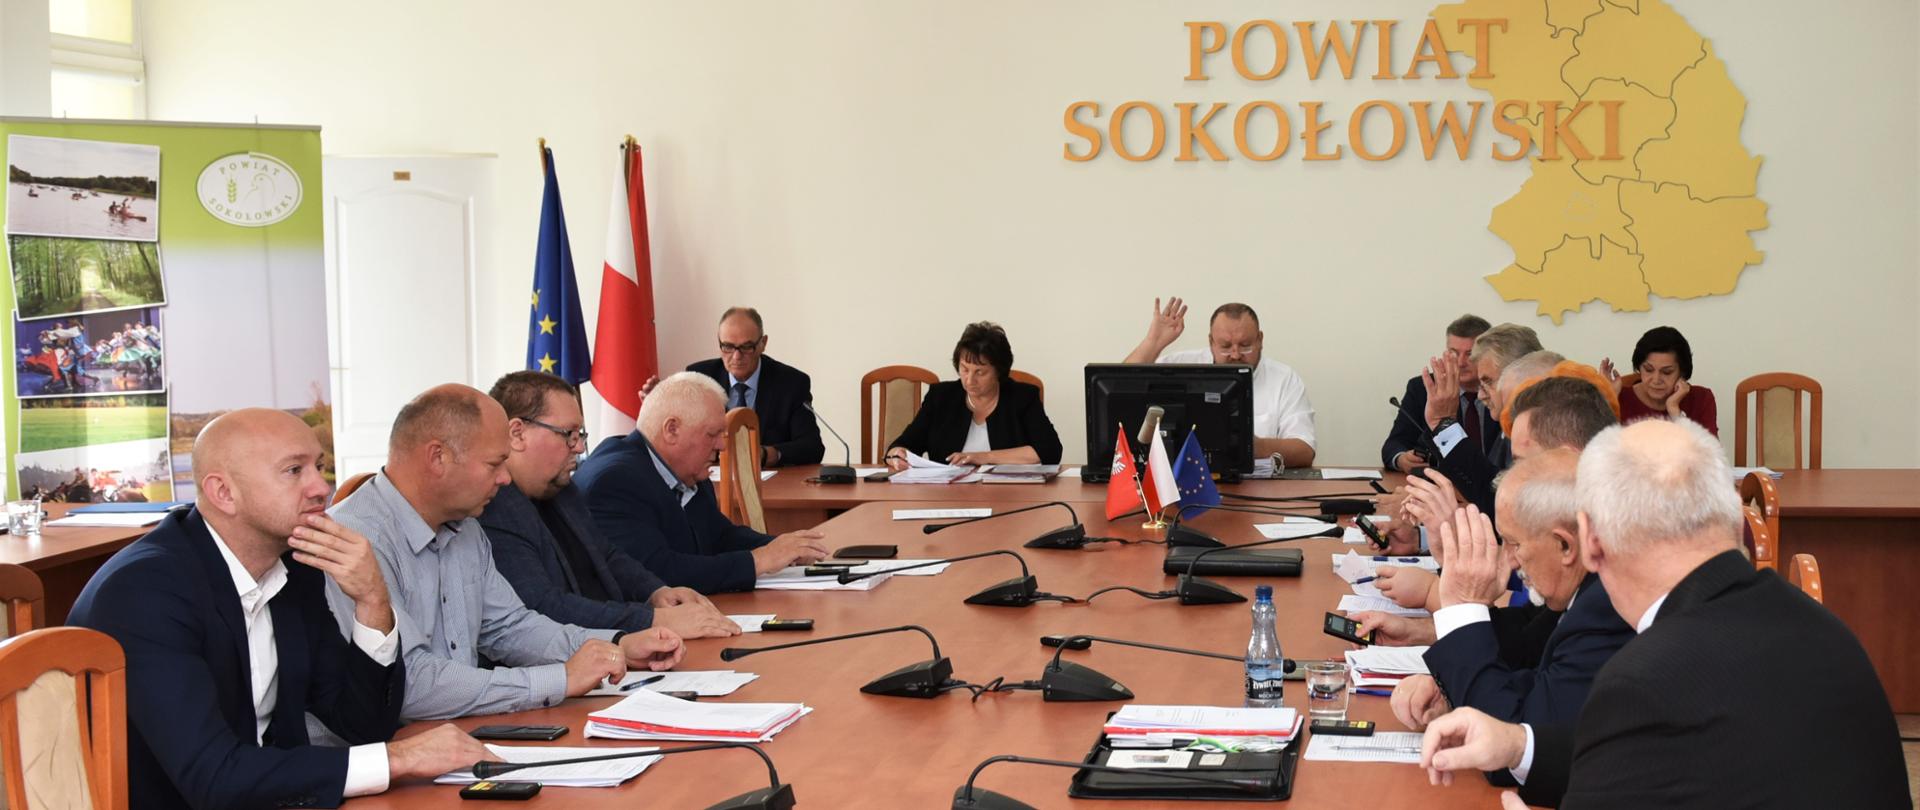 Na zdjęciu widoczni Radni rady powiatu sokołowskiego siedzący przy stole obrad podczas głosowania 